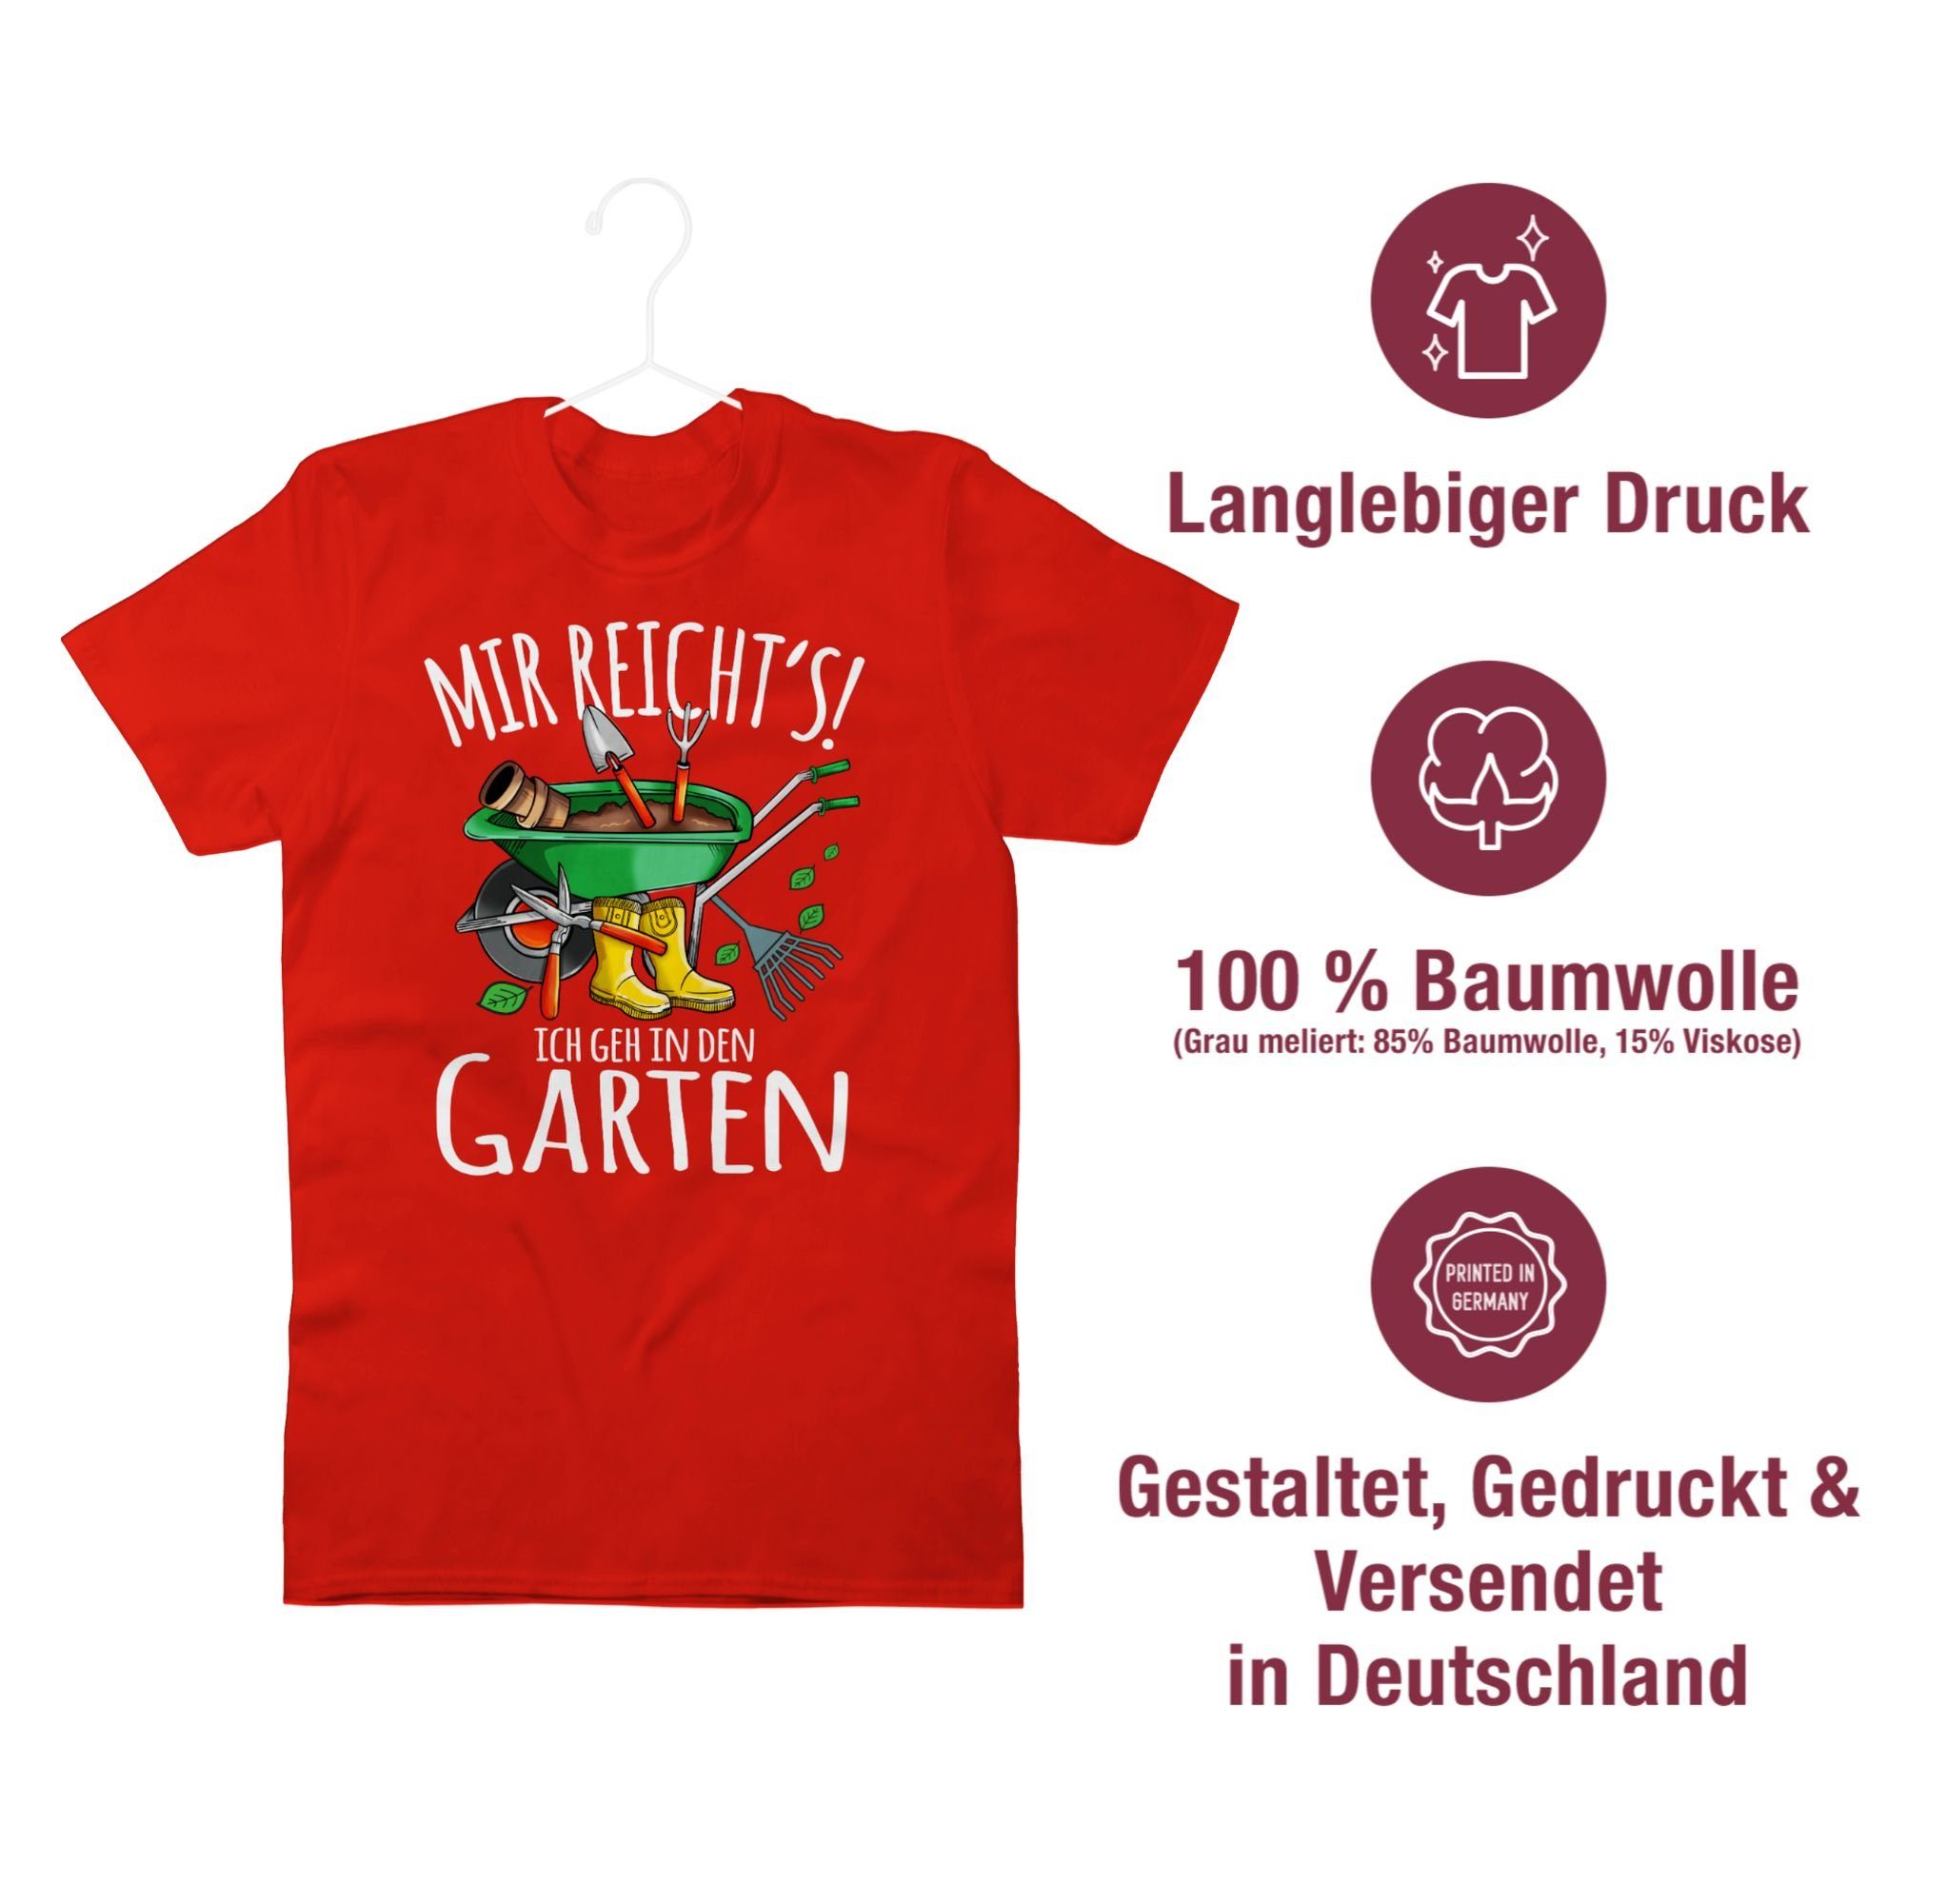 ich den - in Outfit Gärtnern reicht's weiß T-Shirt Shirtracer & Gartenarbeit Mir geh - Hobby Garten 03 Rot